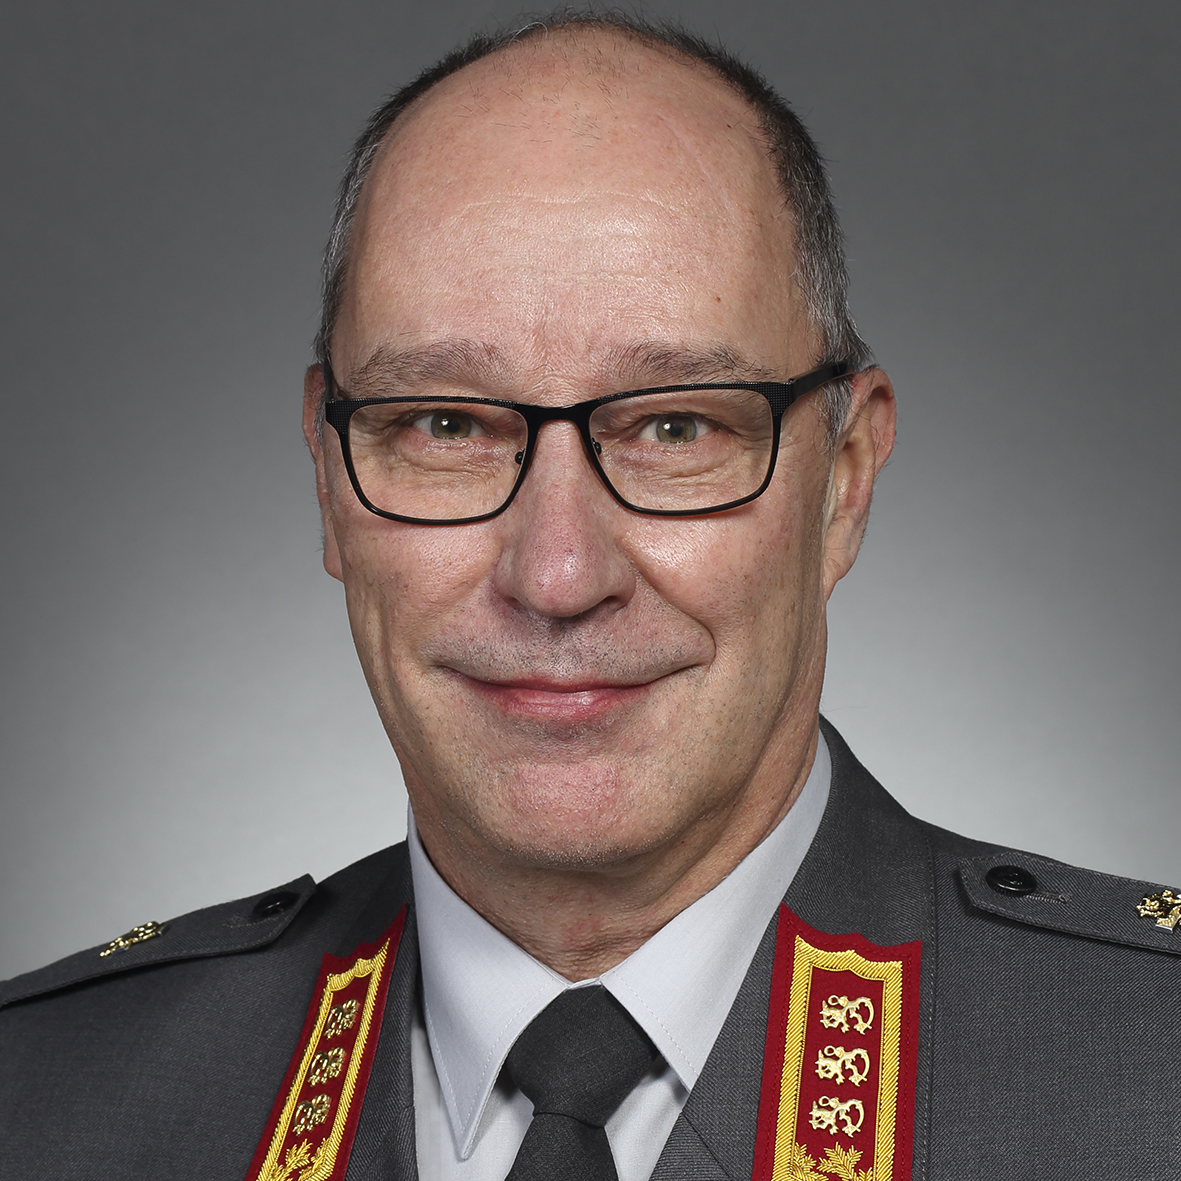 Generallöjtnant Timo Kakkola